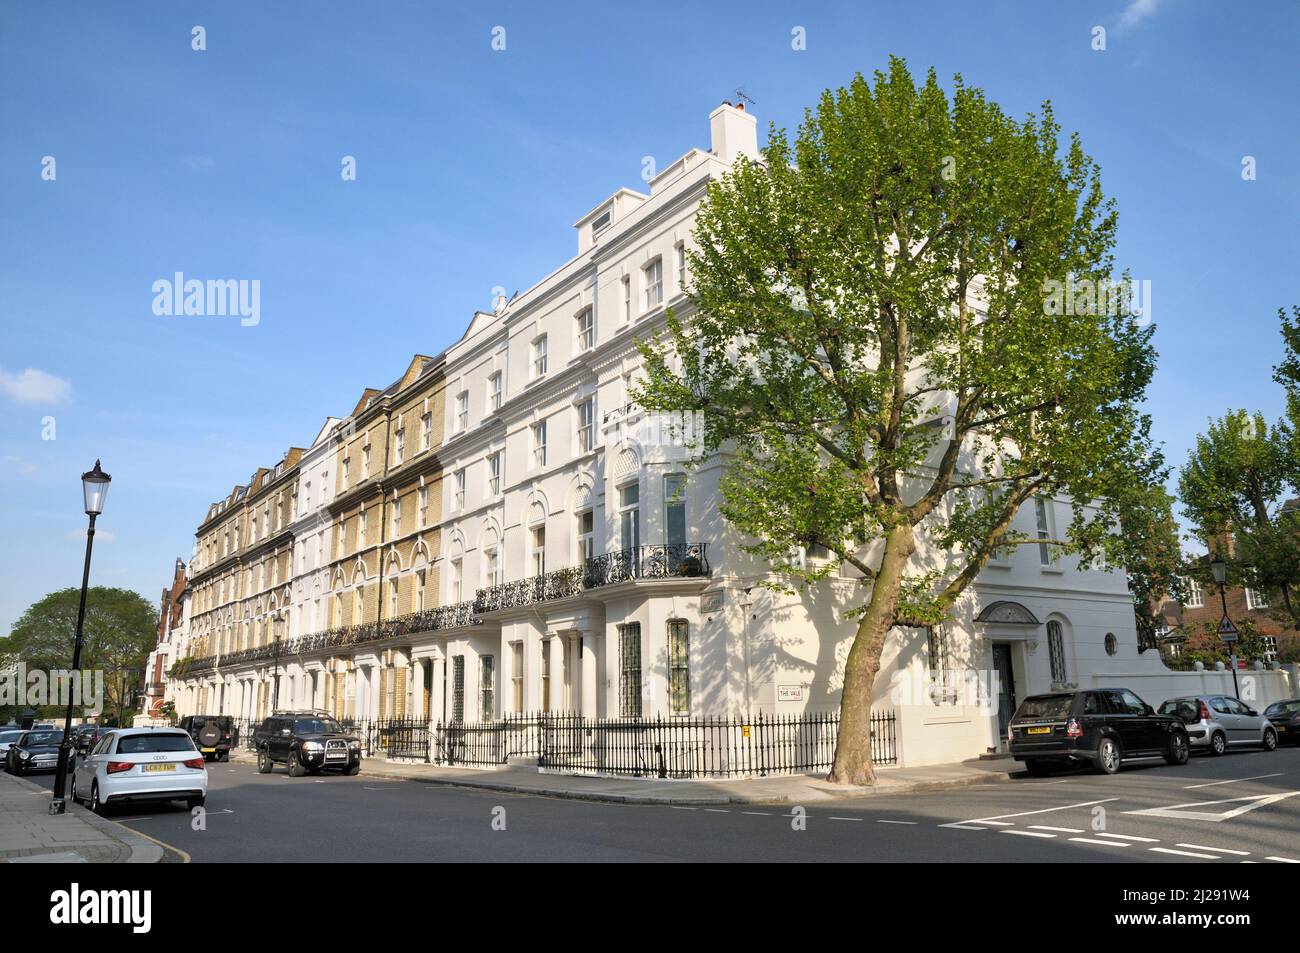 Architettura di periodo in corrispondenza del punto di giunzione fra le frondose strade residenziali di Elm Park Road e la vale, a Chelsea, Londra SW3, England, Regno Unito Foto Stock